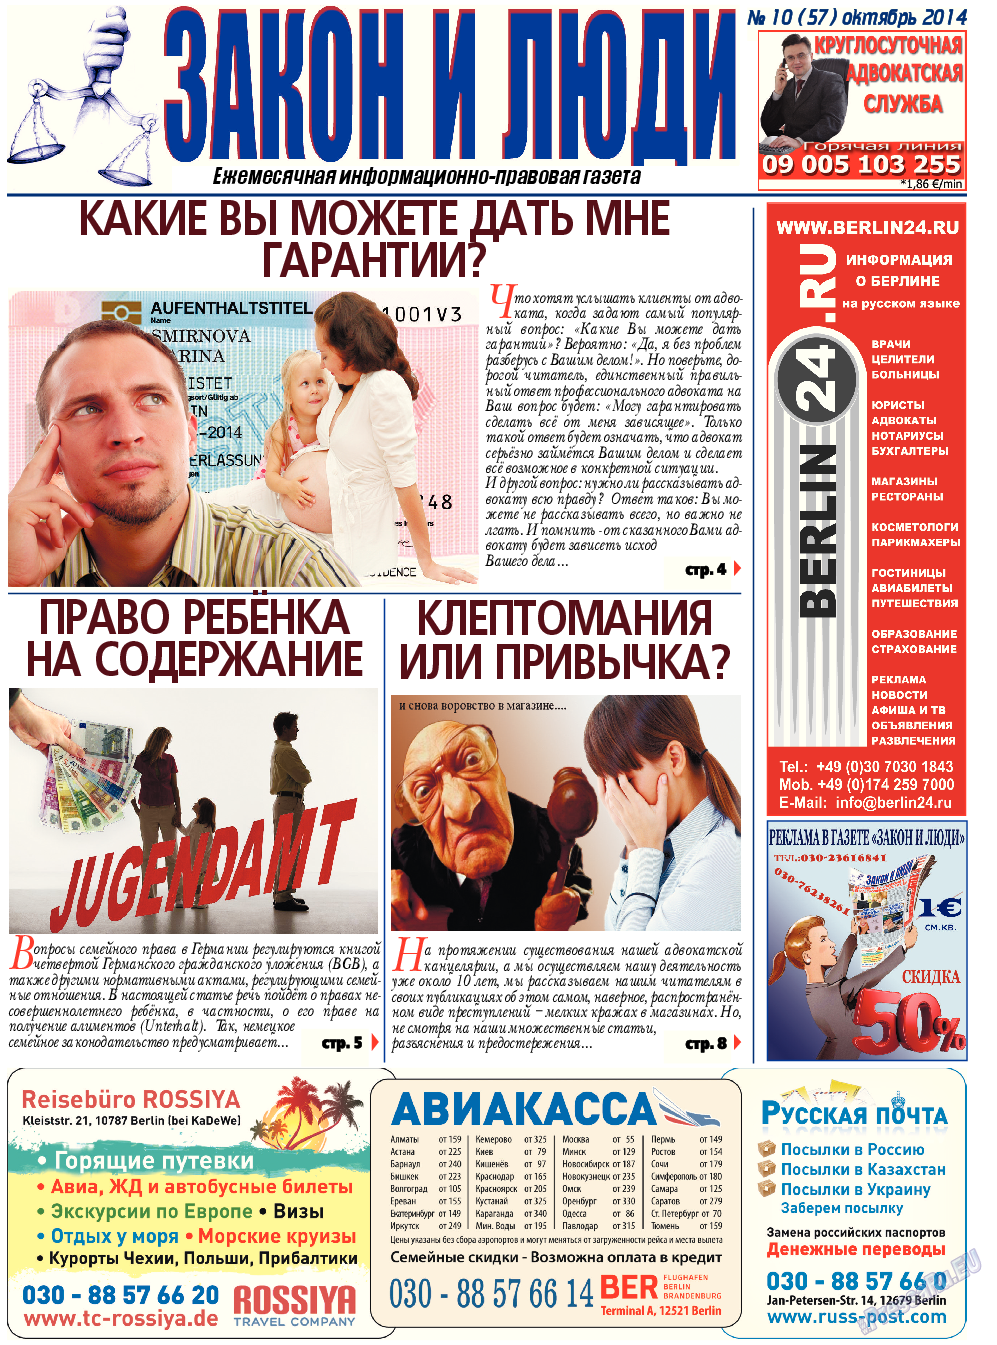 Закон и люди, газета. 2014 №10 стр.1